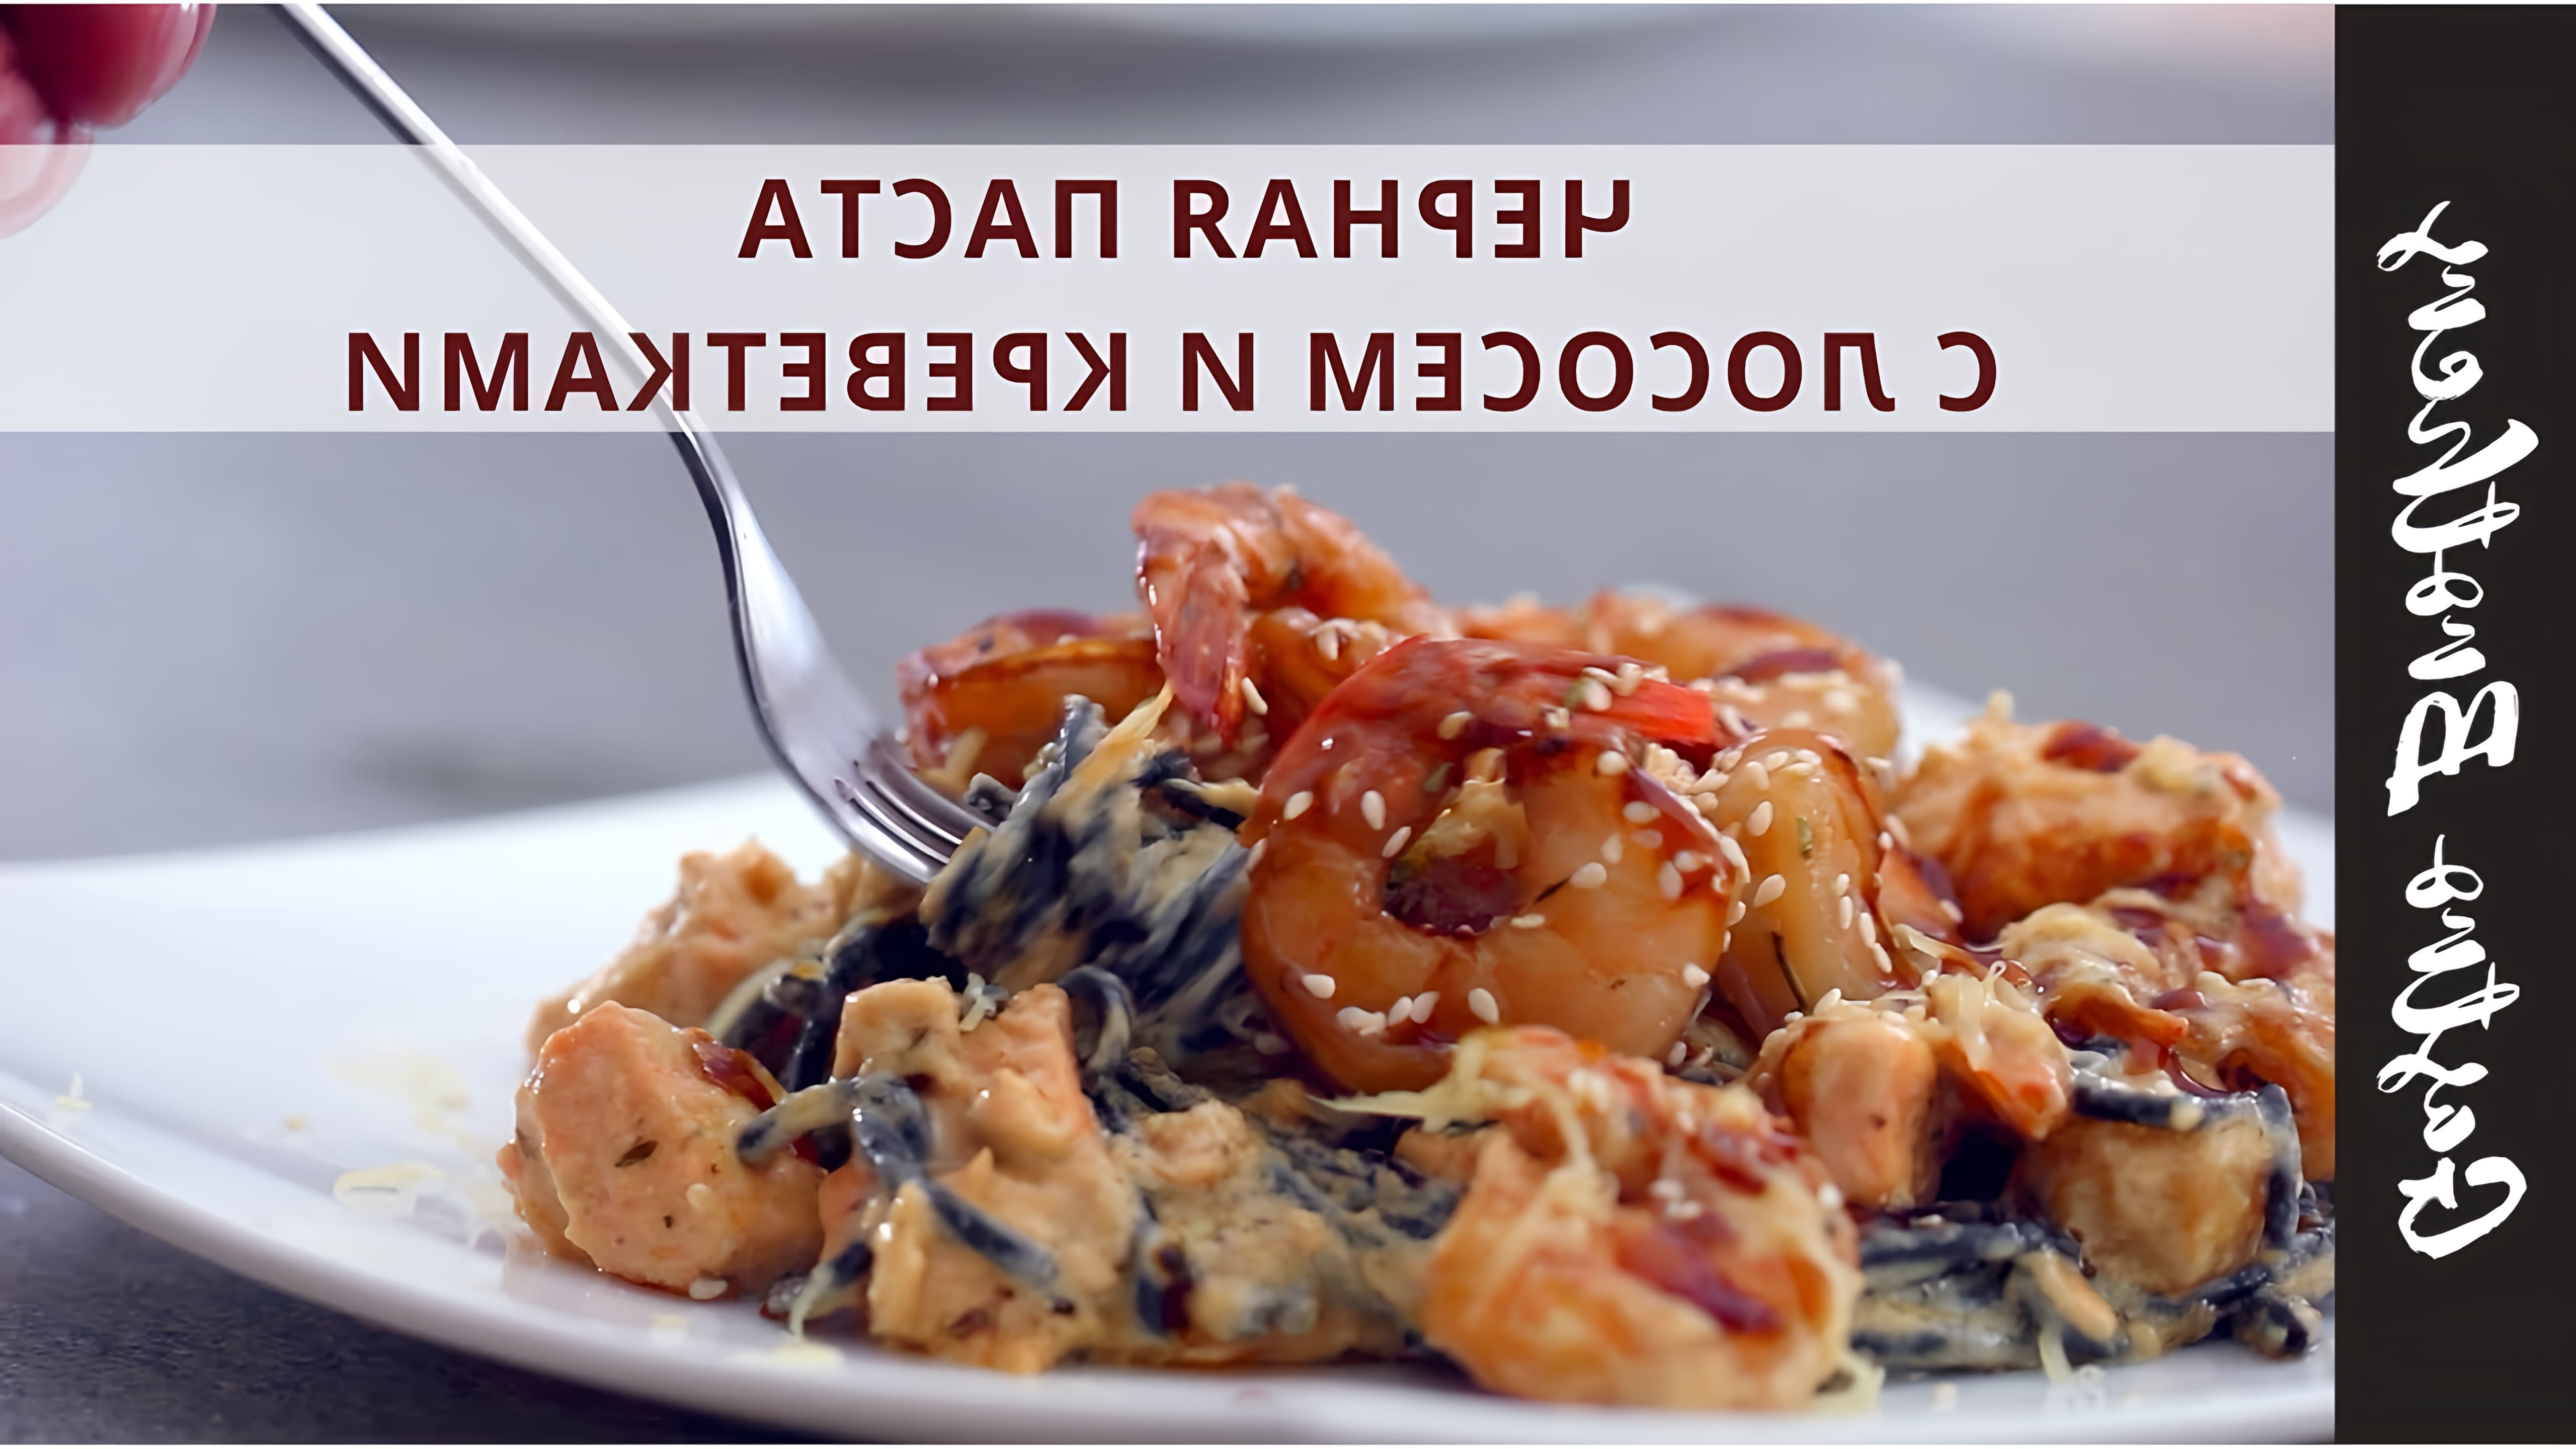 В этом видео демонстрируется рецепт черной пасты с креветками и лососем в сливочном соусе